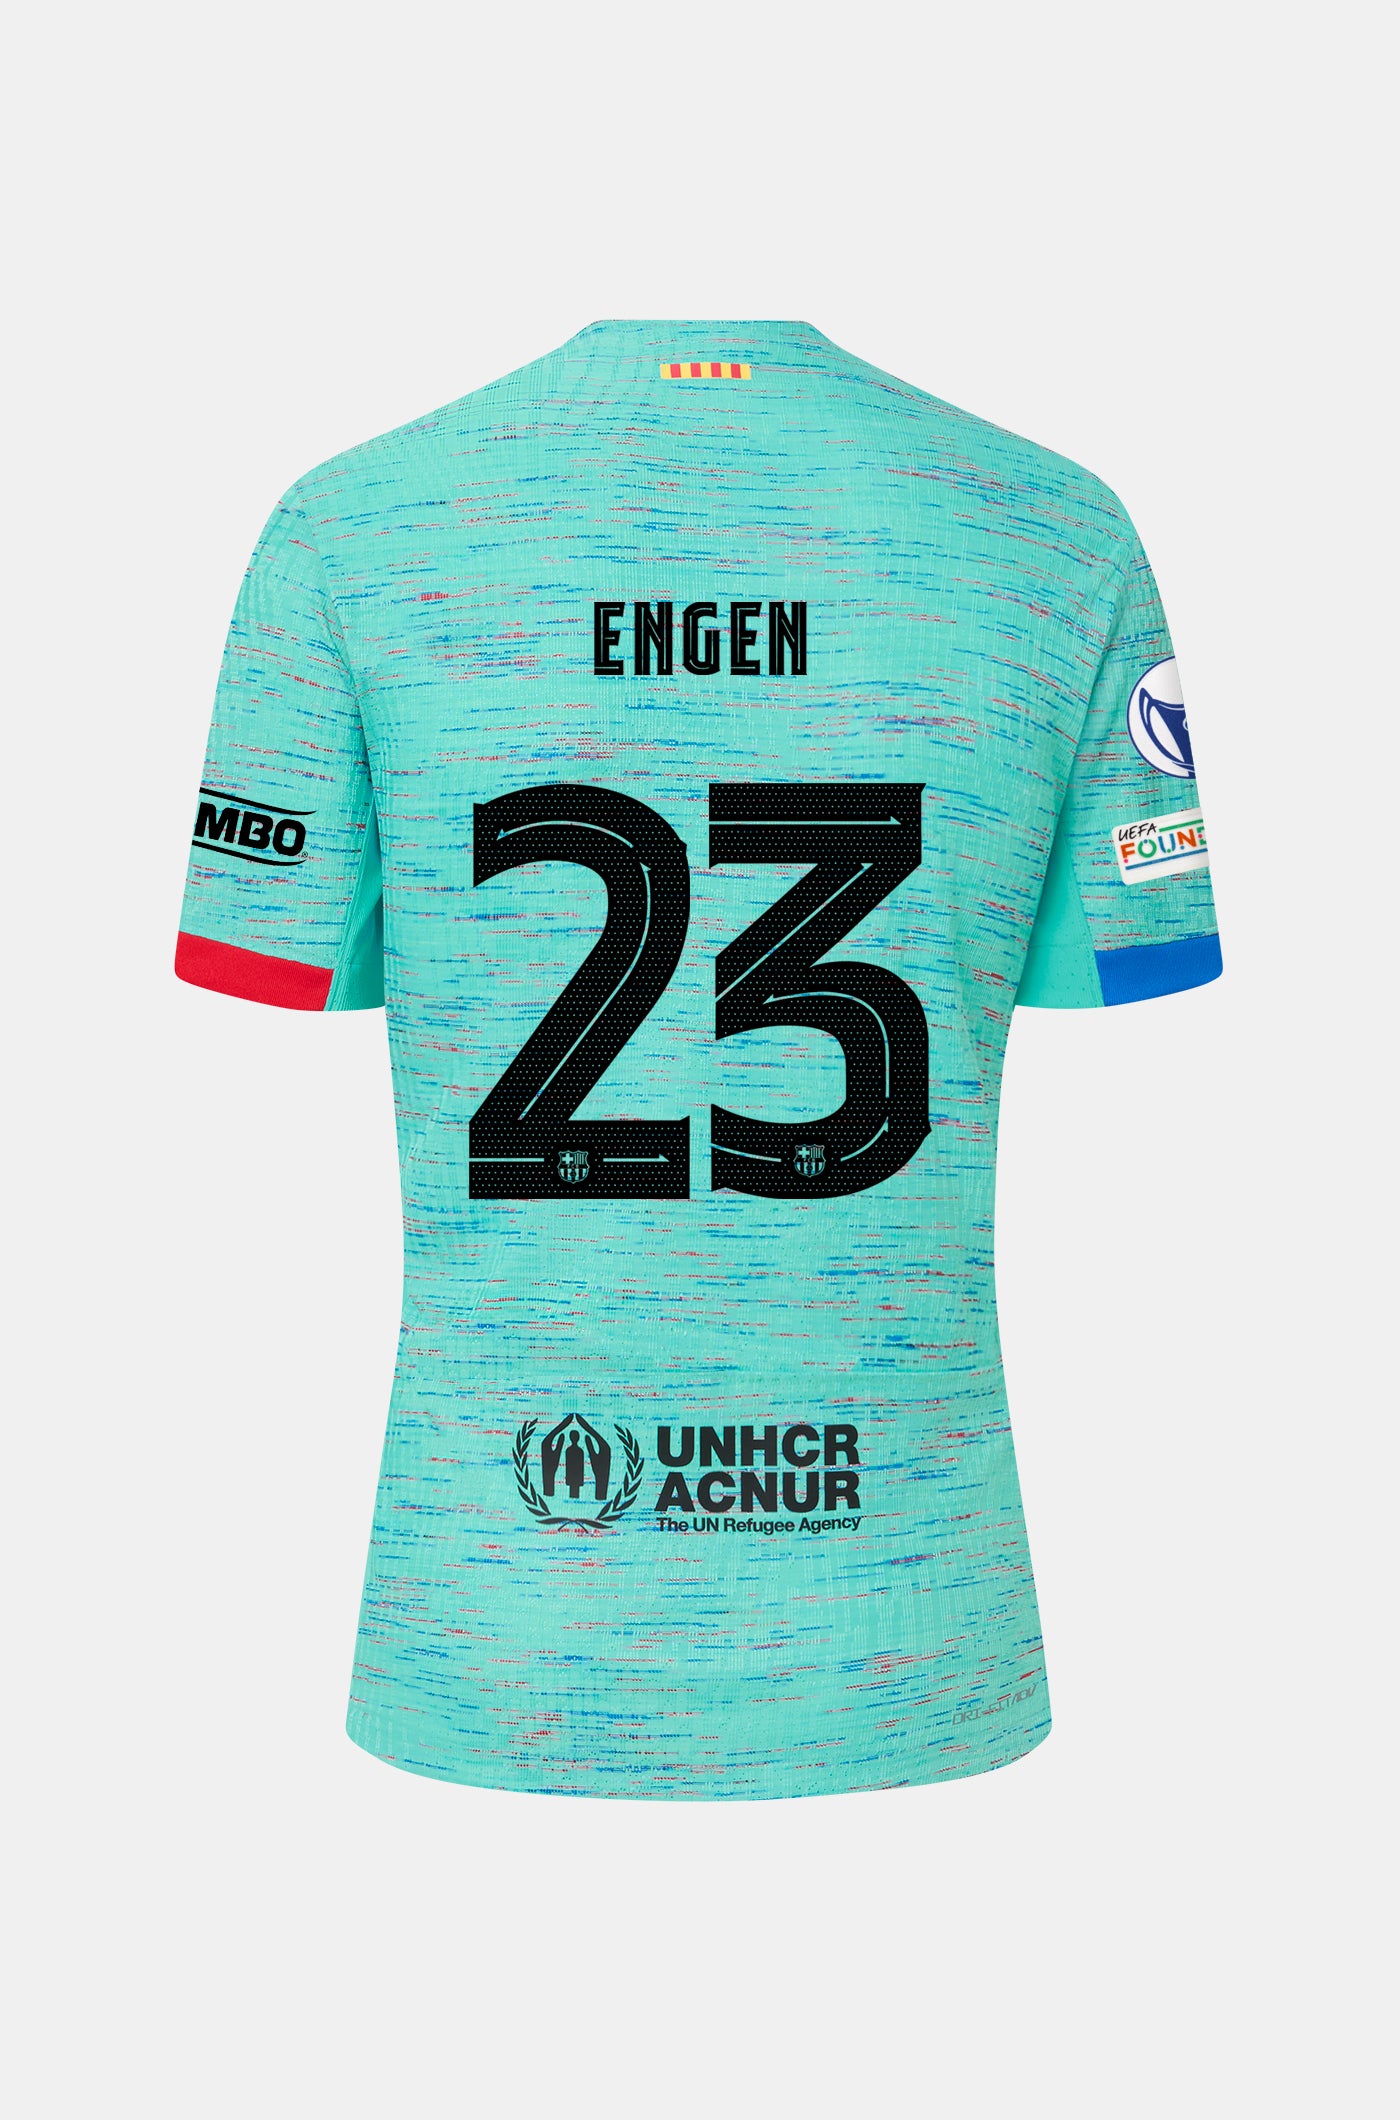 UWCL FC Barcelona third shirt 23/24 Player's Edition - ENGEN